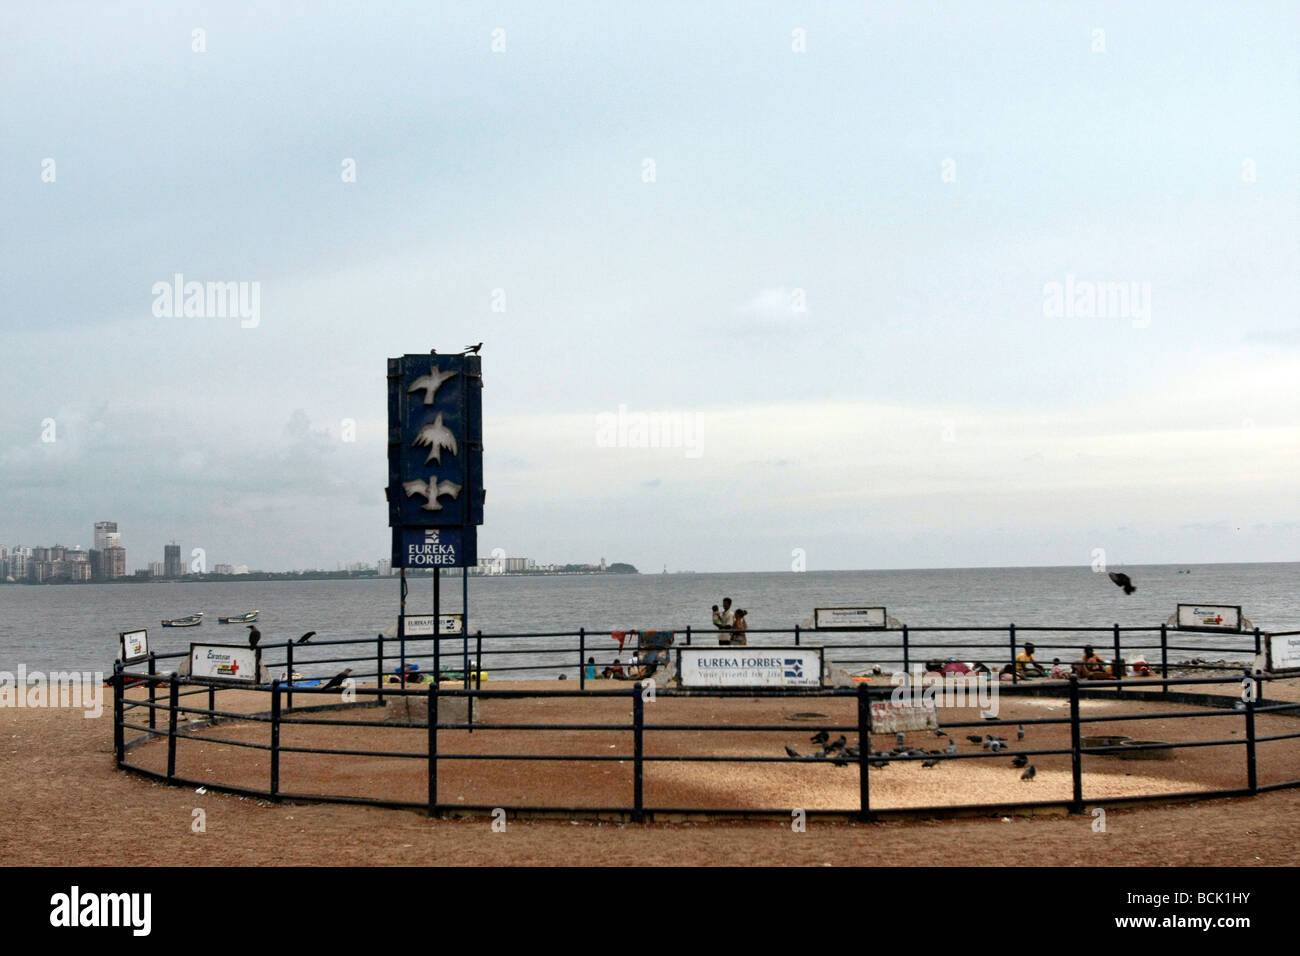 A feeding place for birds at Chowpatty Beach in Mumbai (Bombay) in India Stock Photo